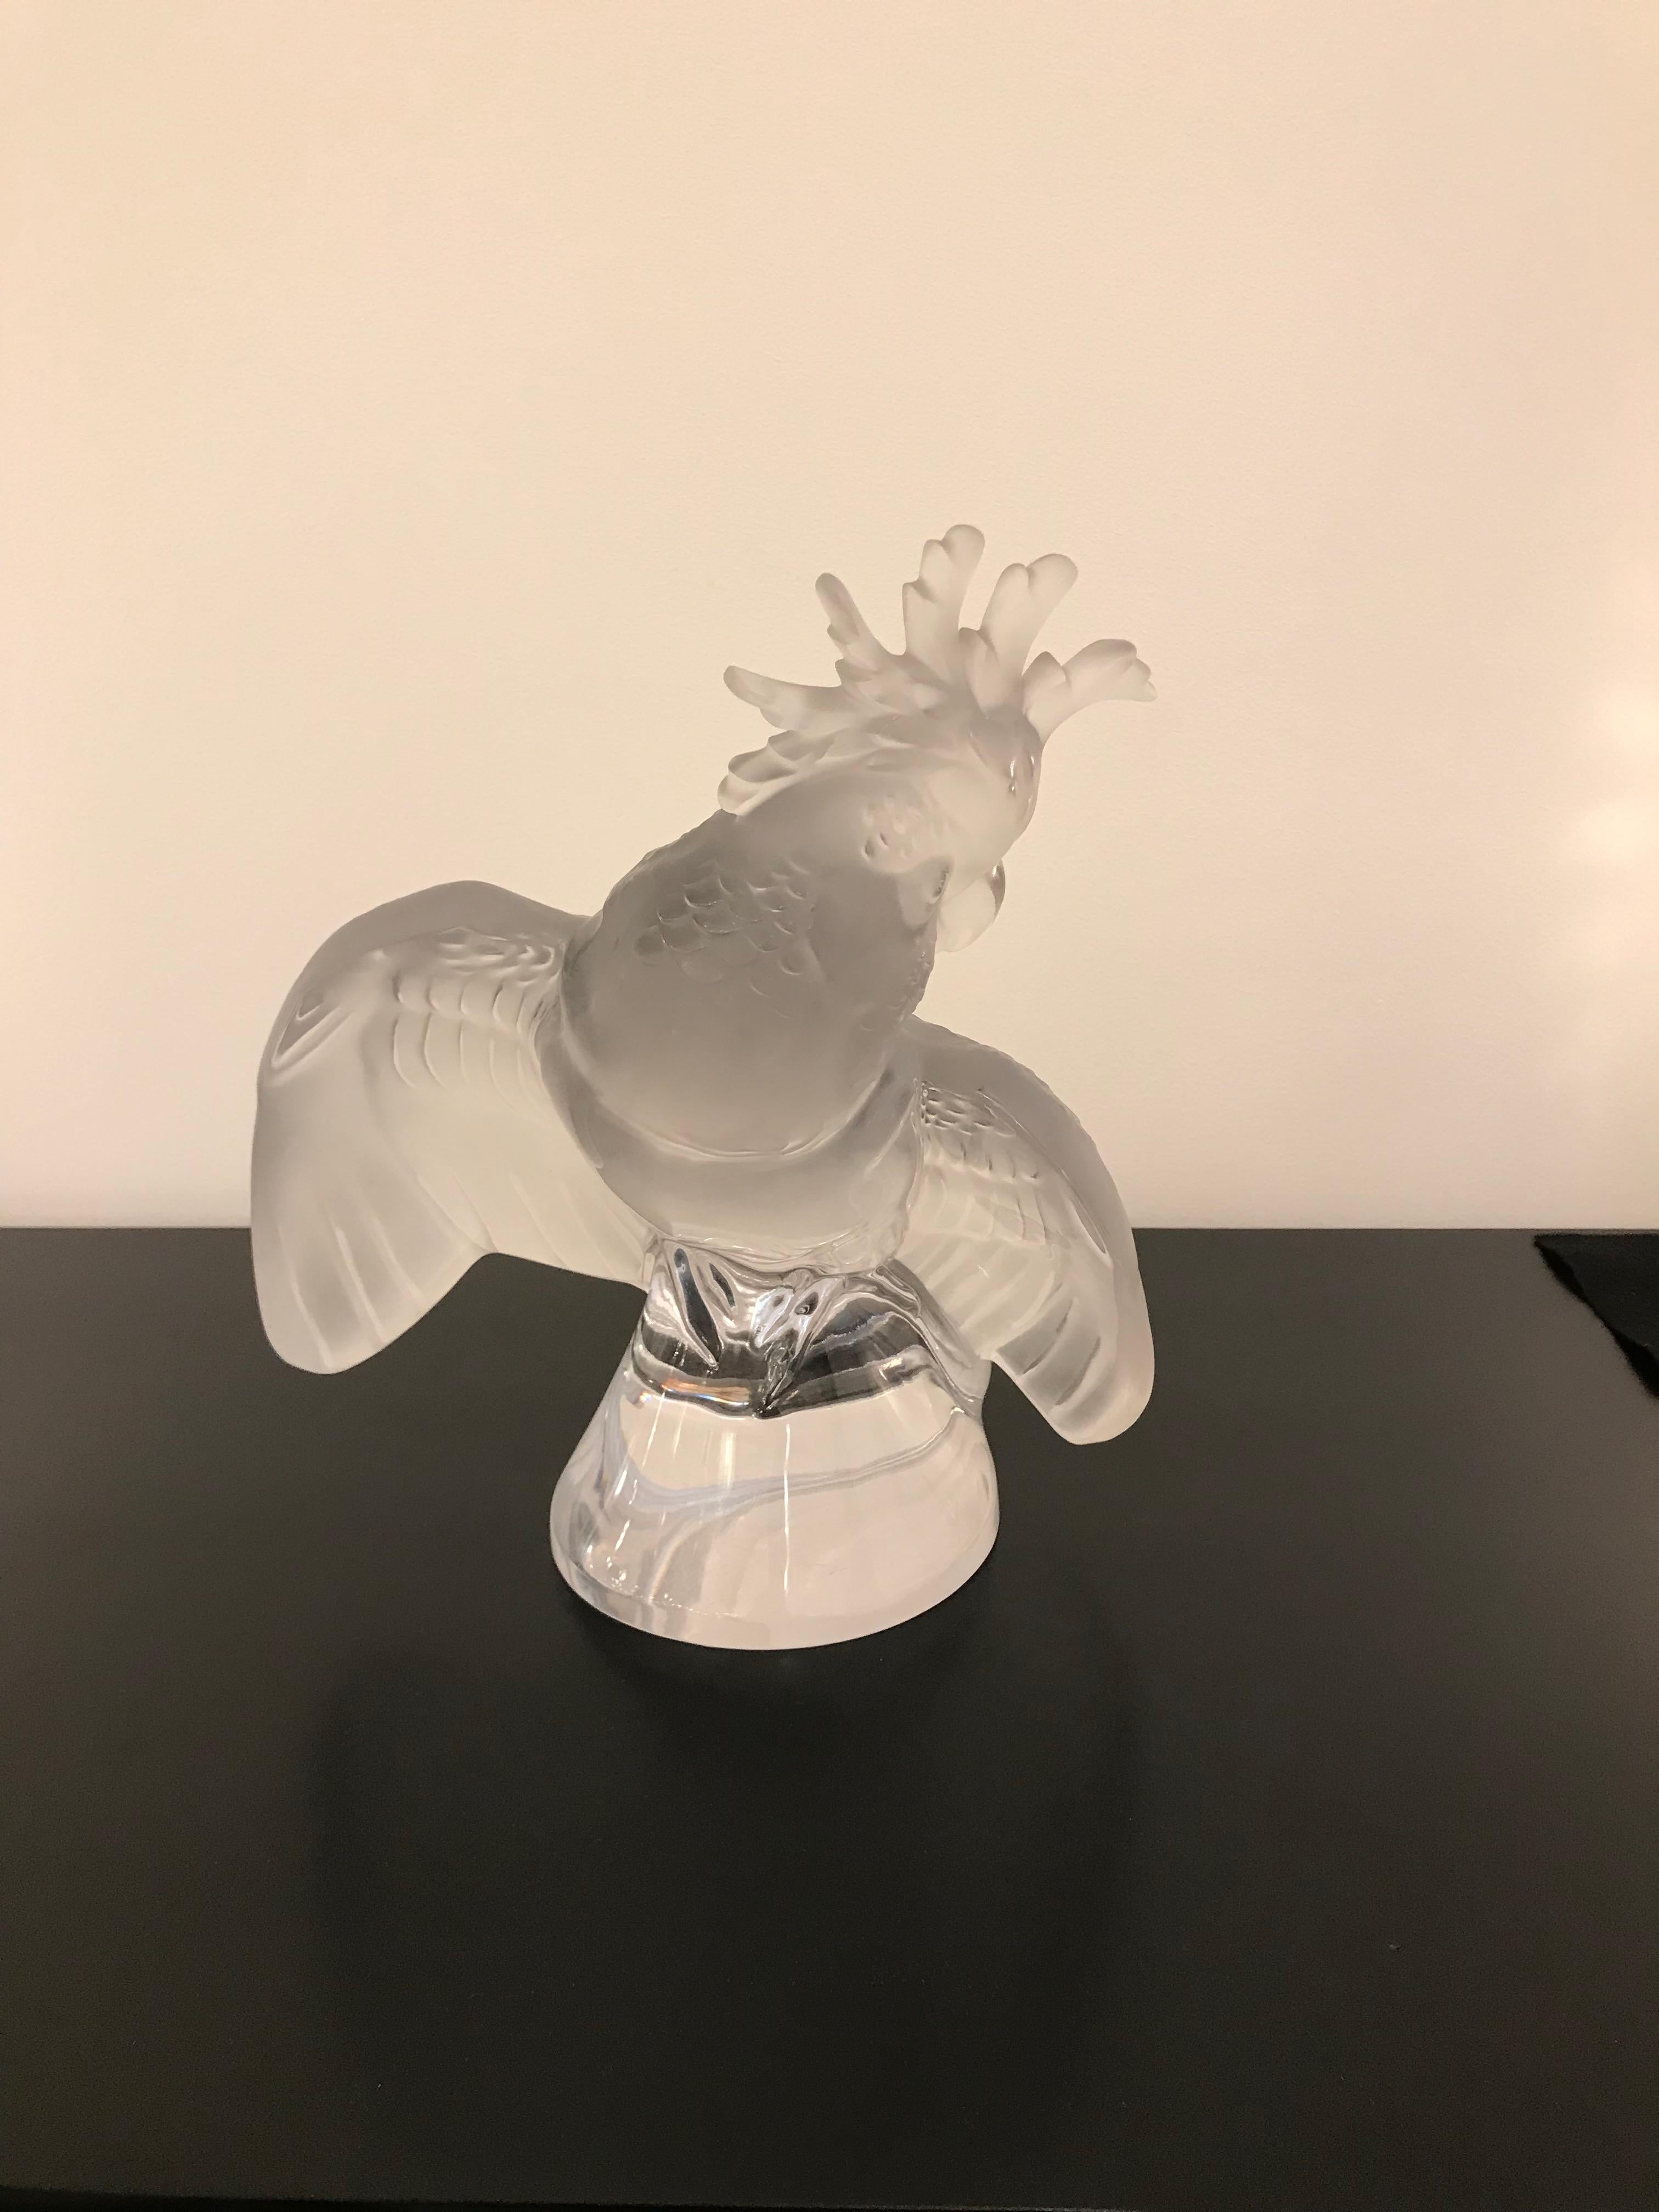 Dies ist eine große Lalique Kristall Kakadu Vogel Skulptur. Signiert Lalique France auf dem Sockel.